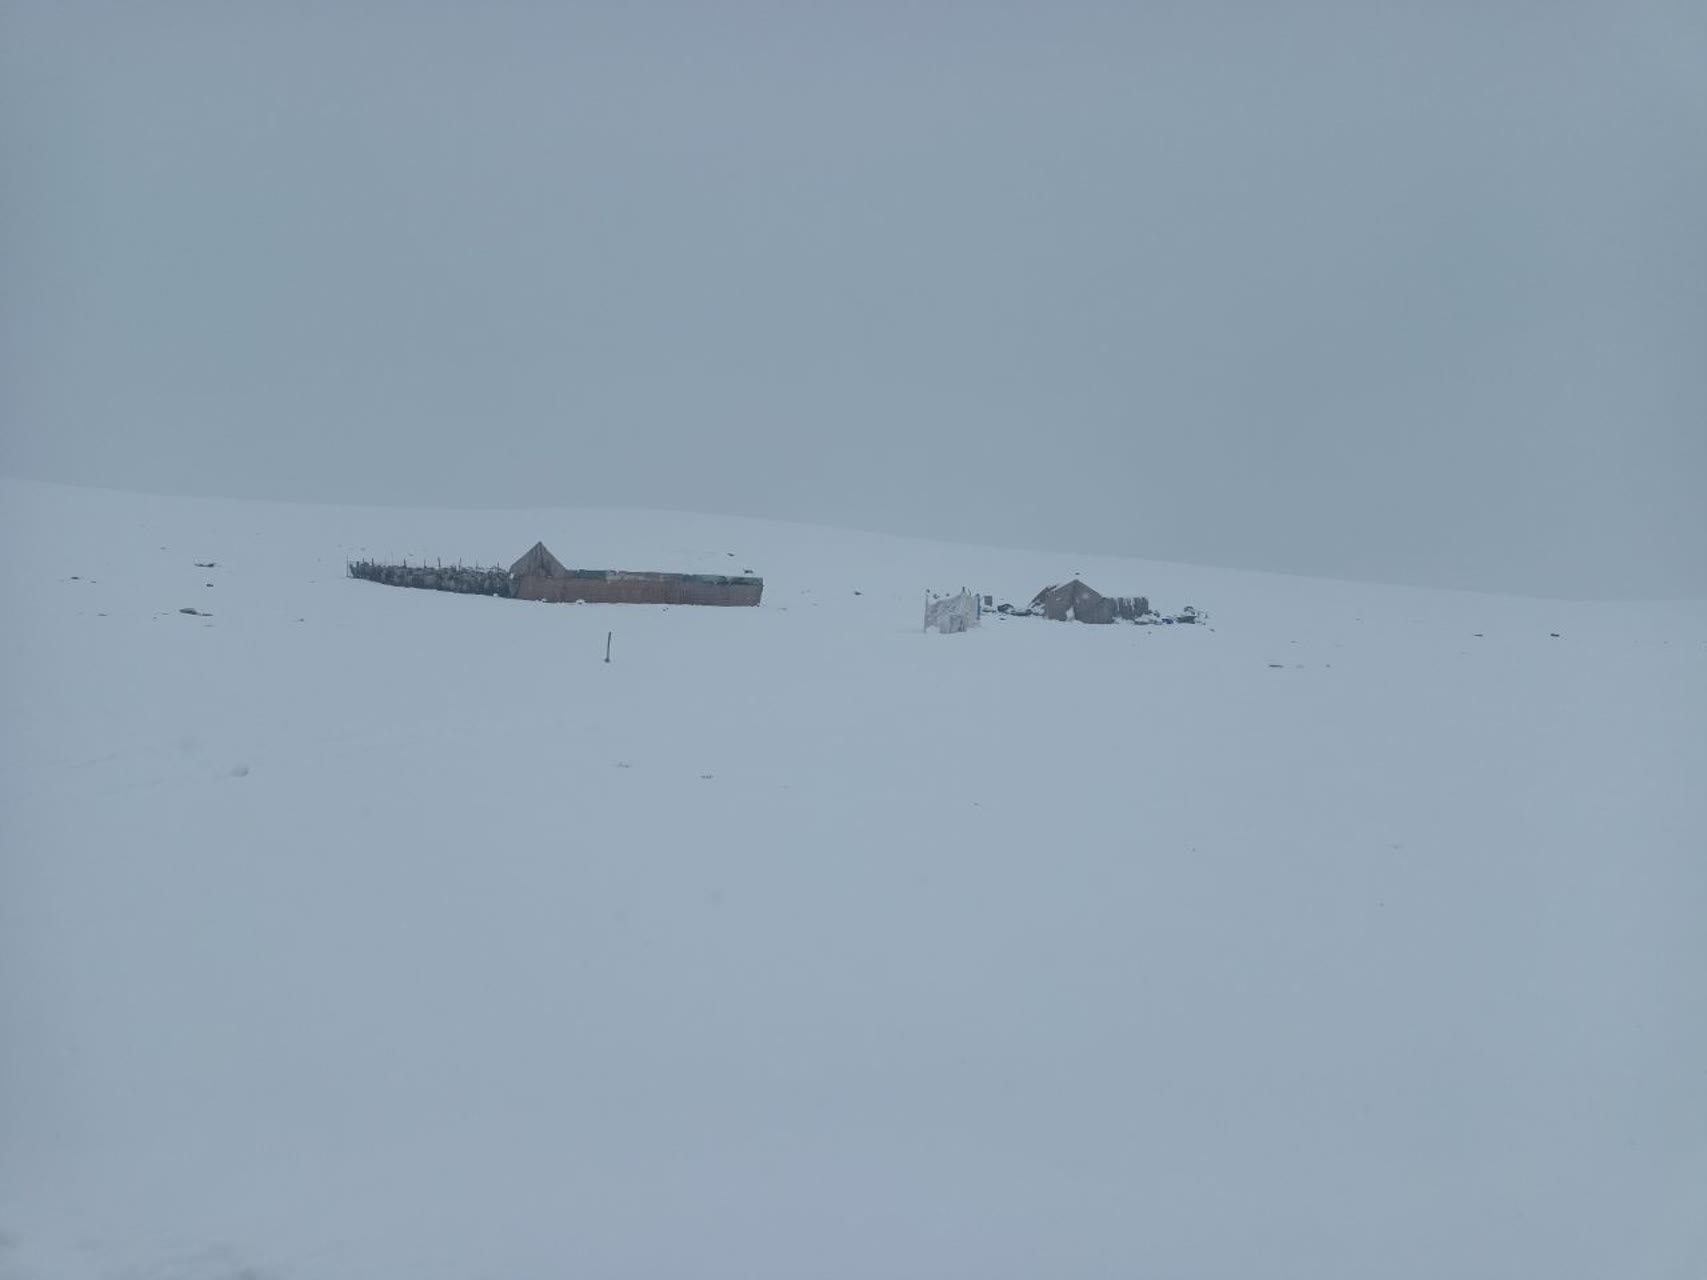  بارش برف عشایر کلیبر را با مشکل مواجه کرد